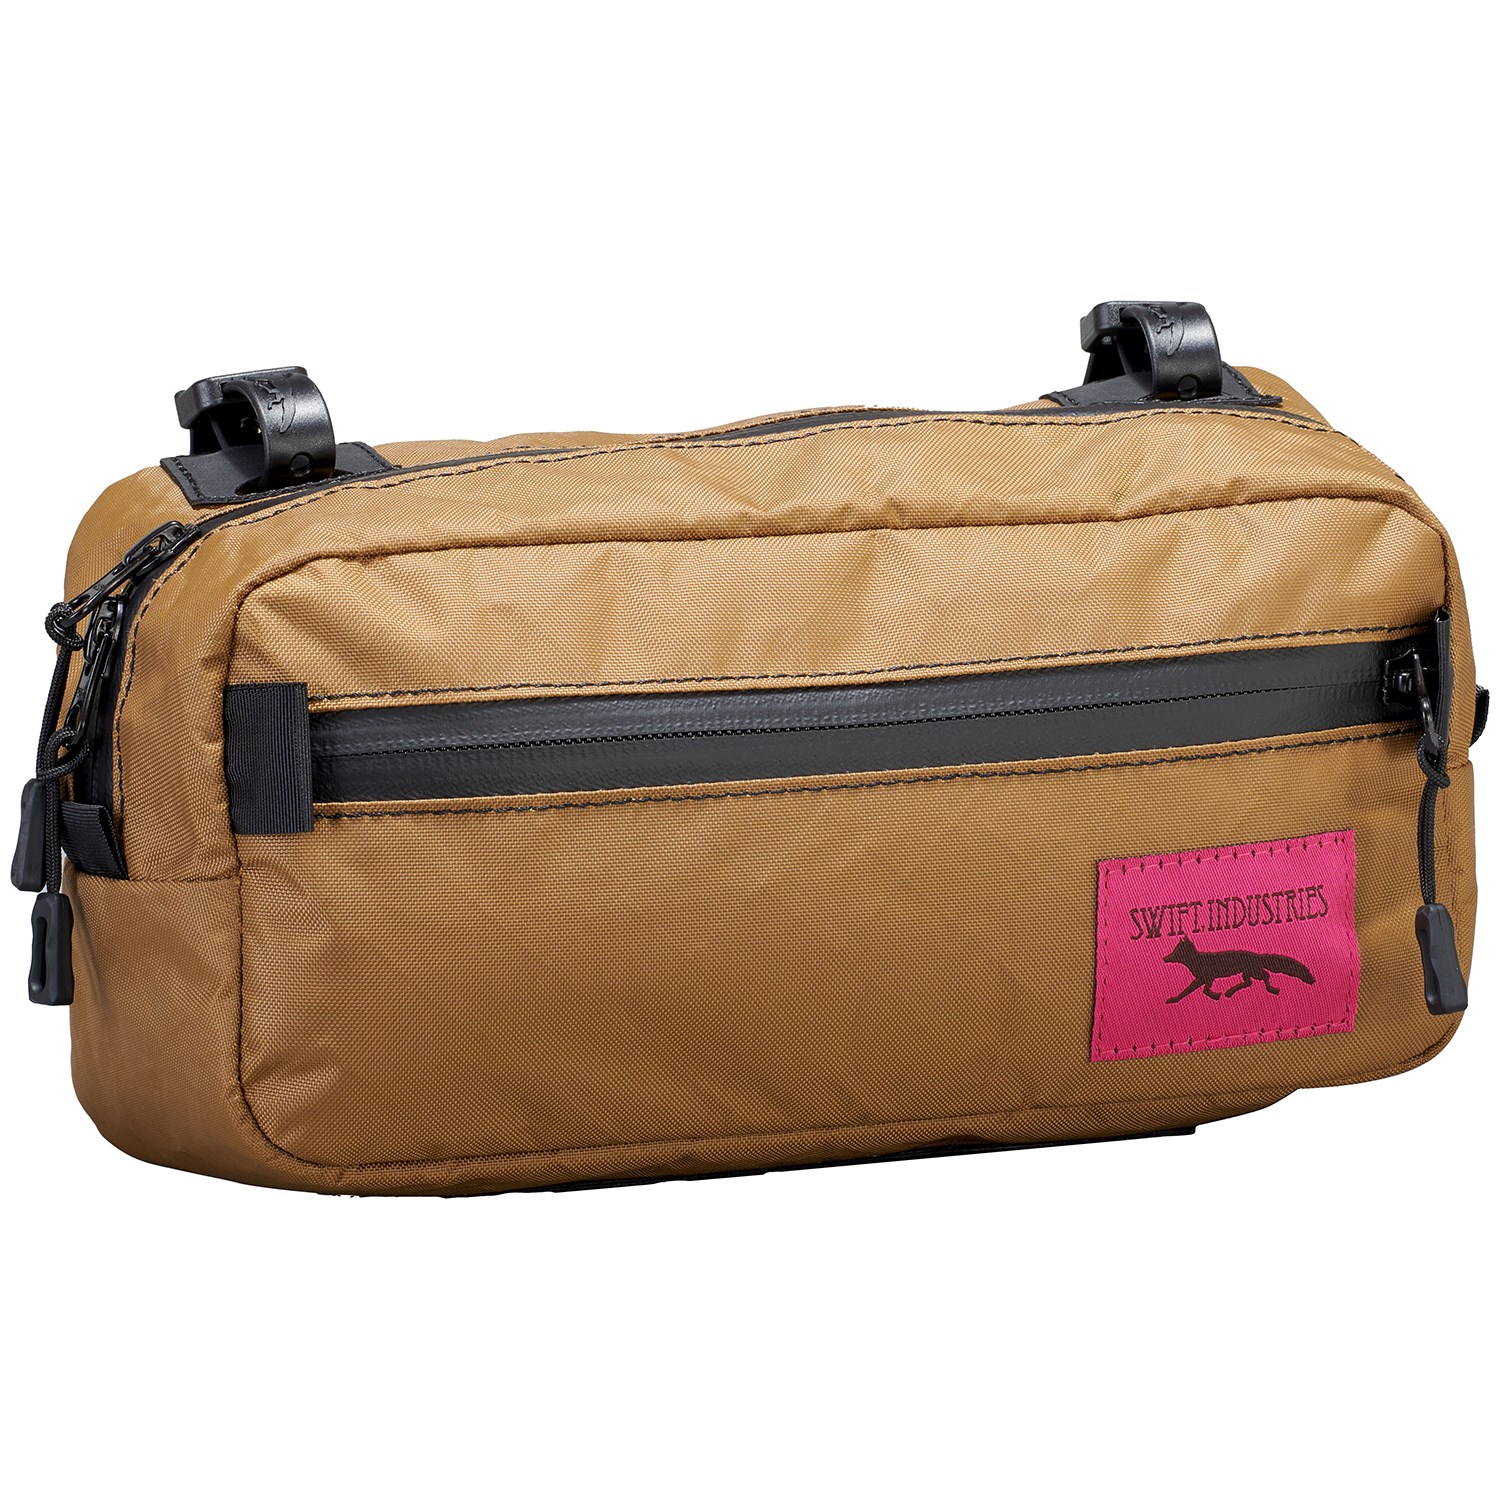 Swift Industries Kestrel Handlebar Bag Review — Gravelstoke